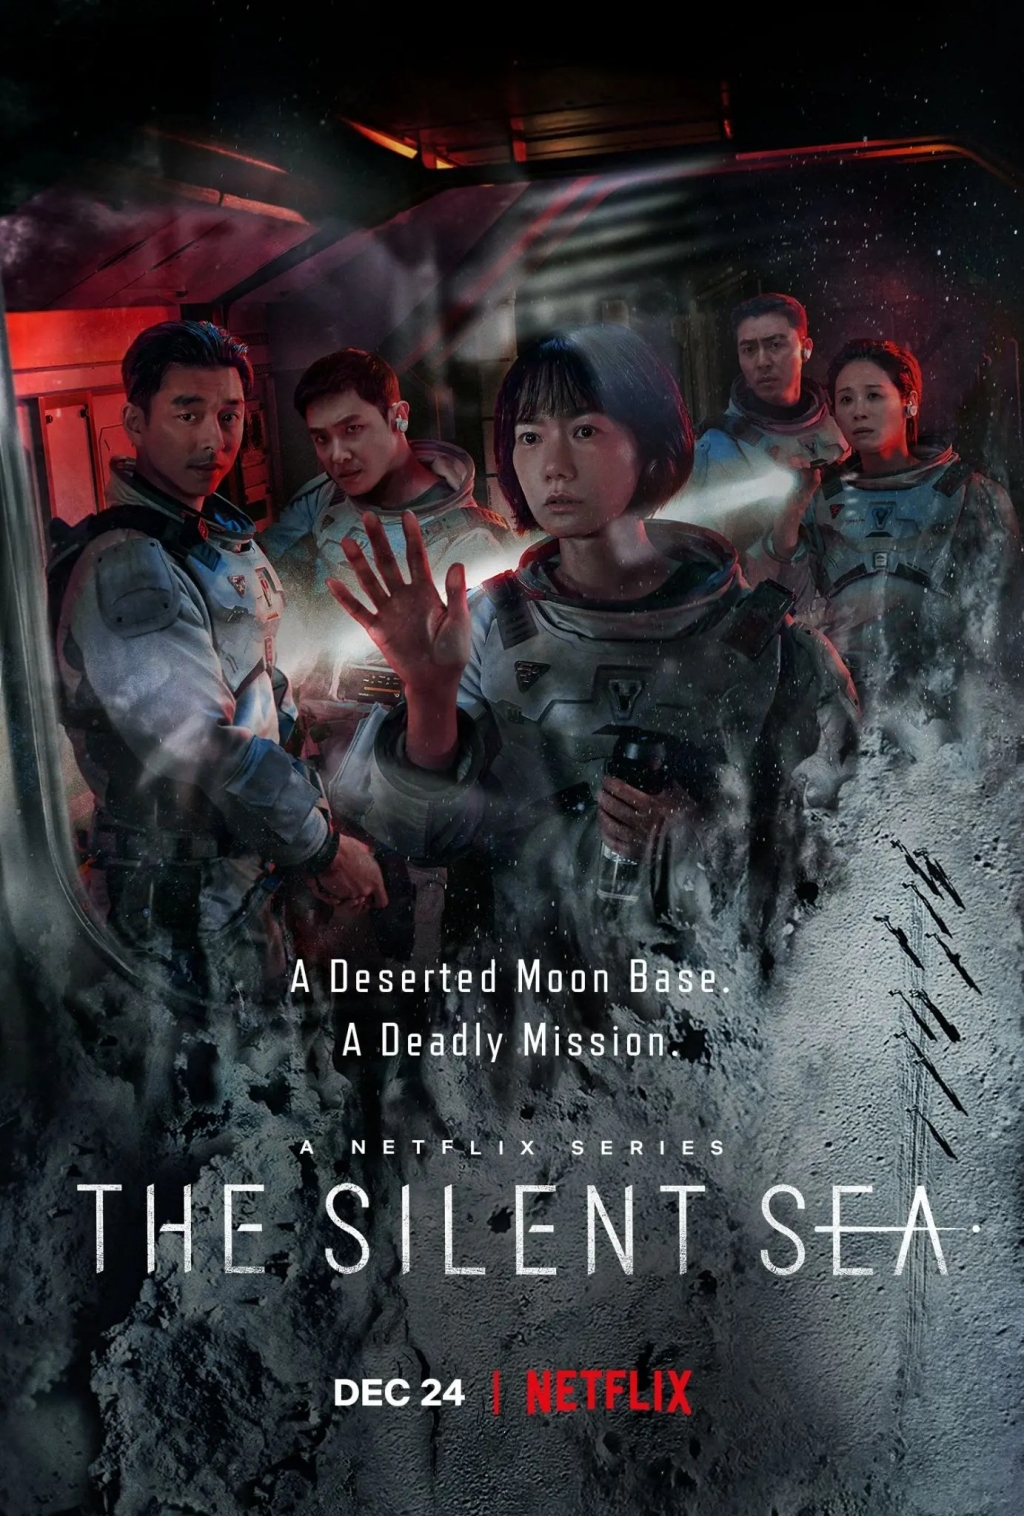 Gong Yoo, Bae Doo Na liều mạng đi tìm bí ẩn không gian trong trailer ‘The Silent Sea’